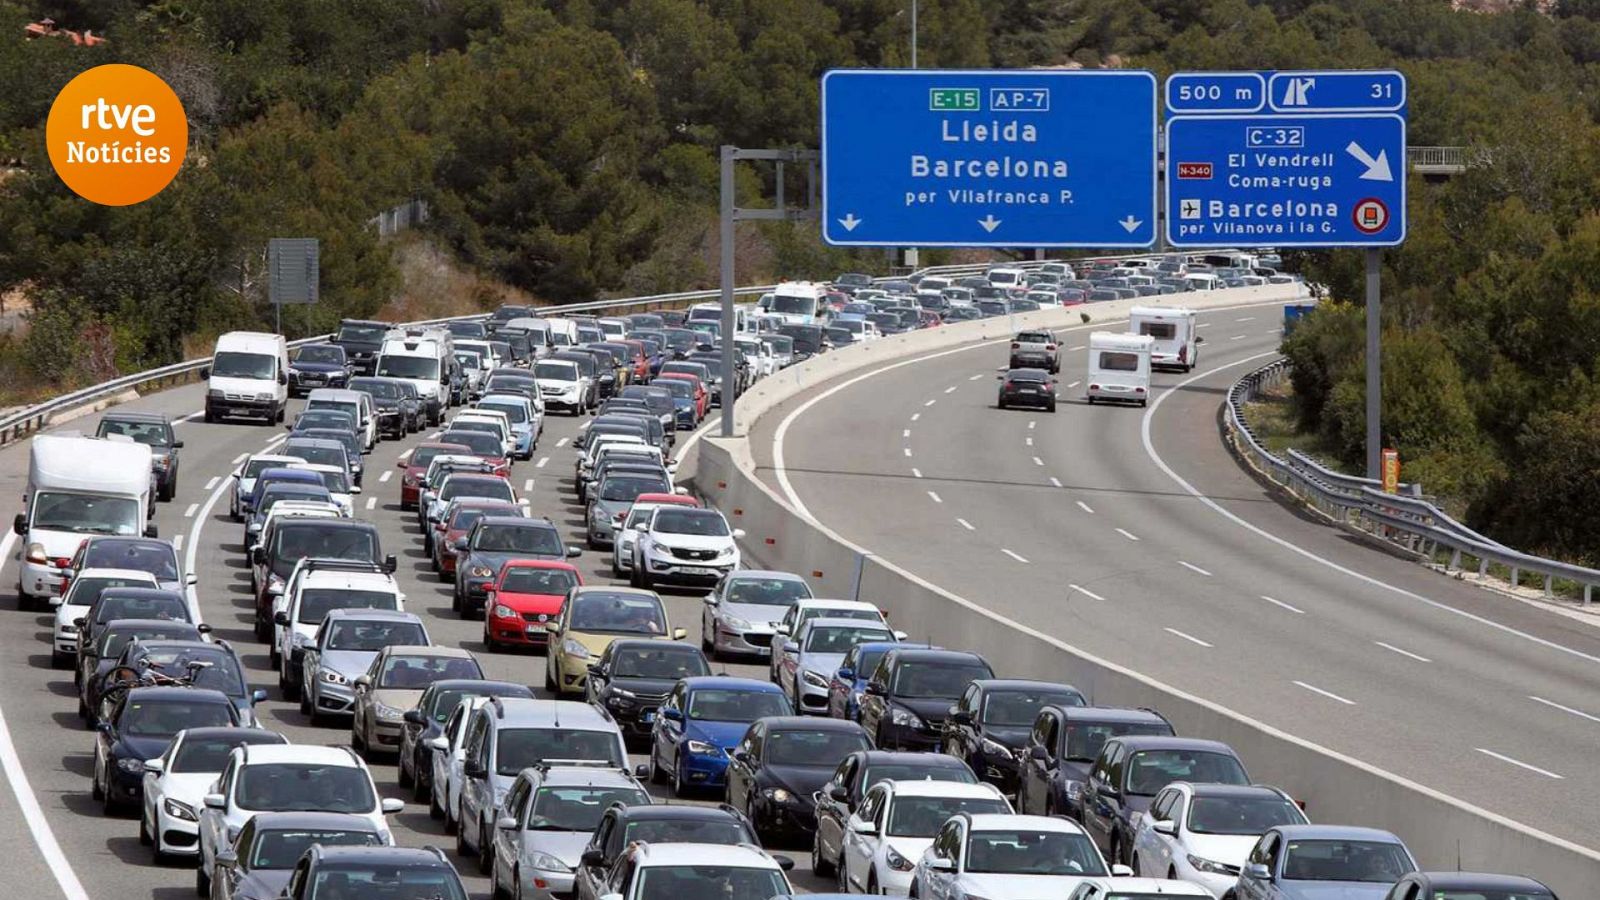 Imatge d'una retenció a l'autopista AP-7 - Notícies avui a Catalunya